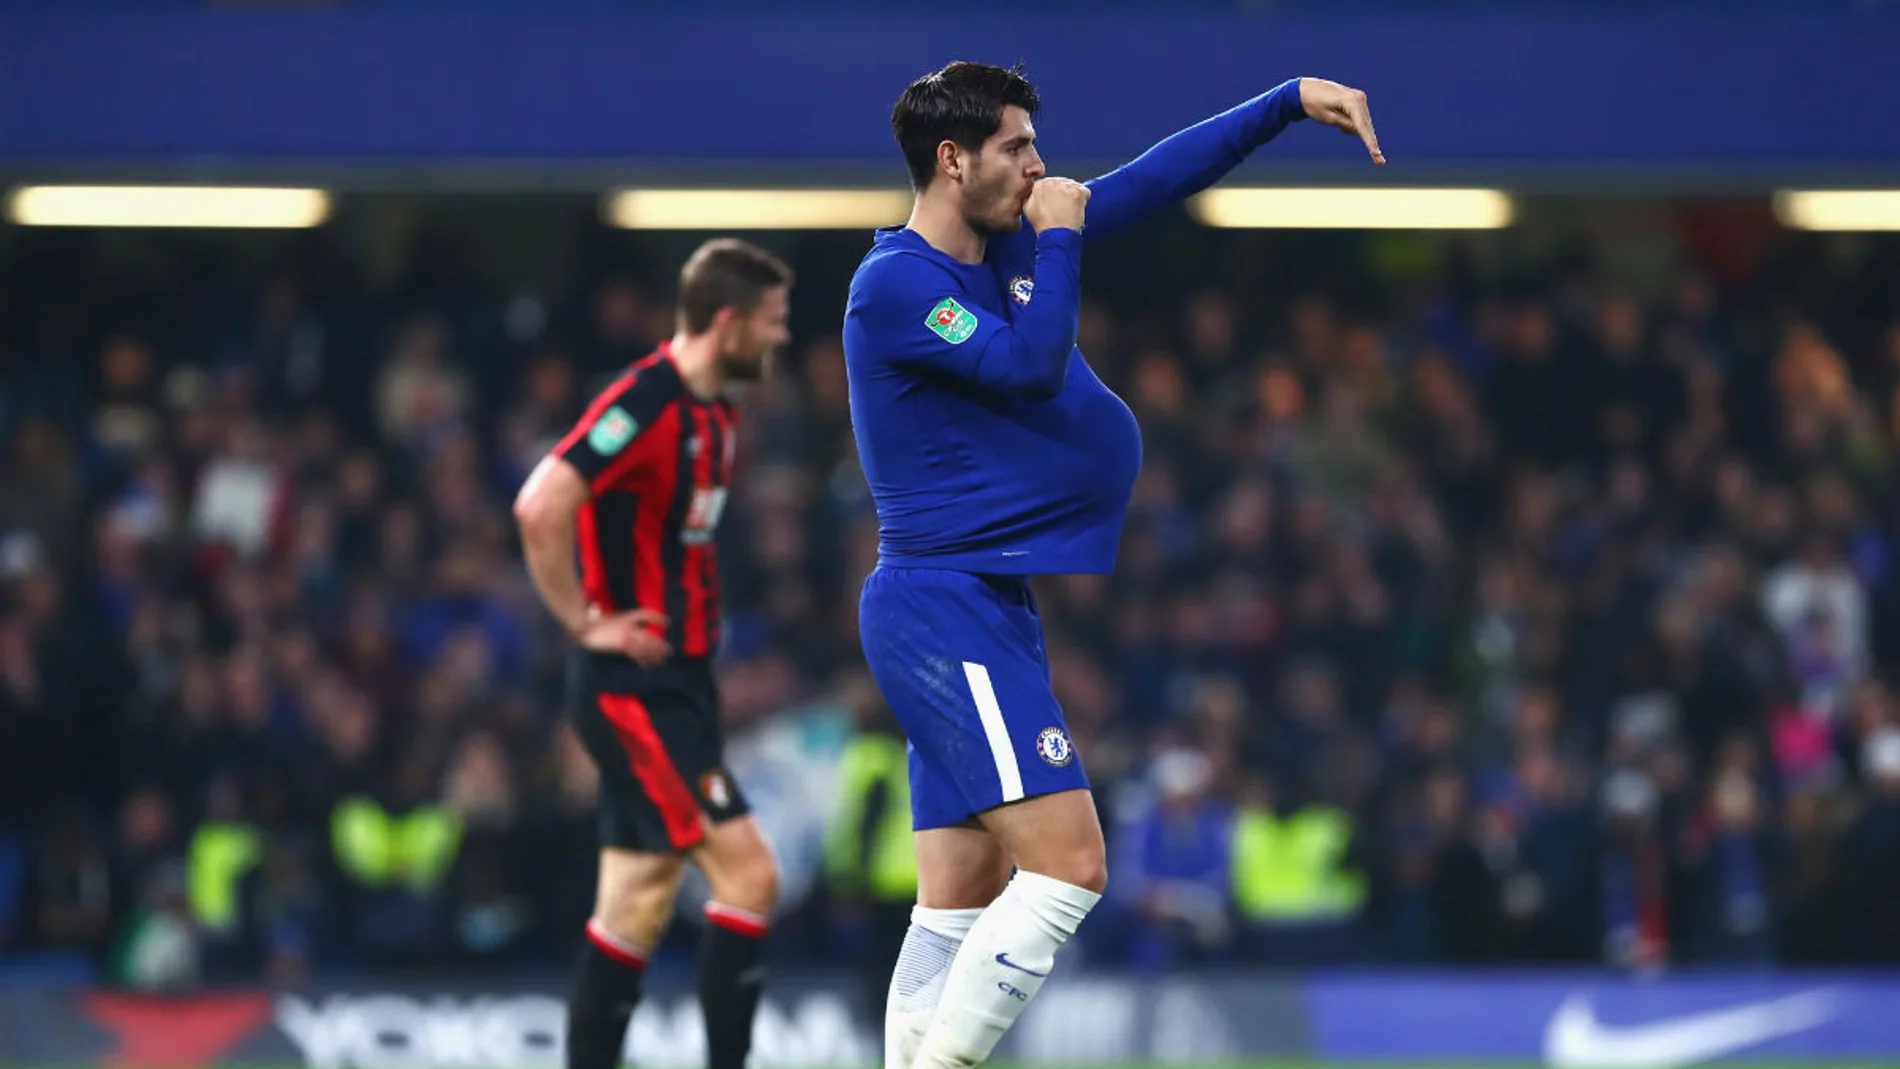 Morata dedica su gol con el Chelsea a su mujer embarazada